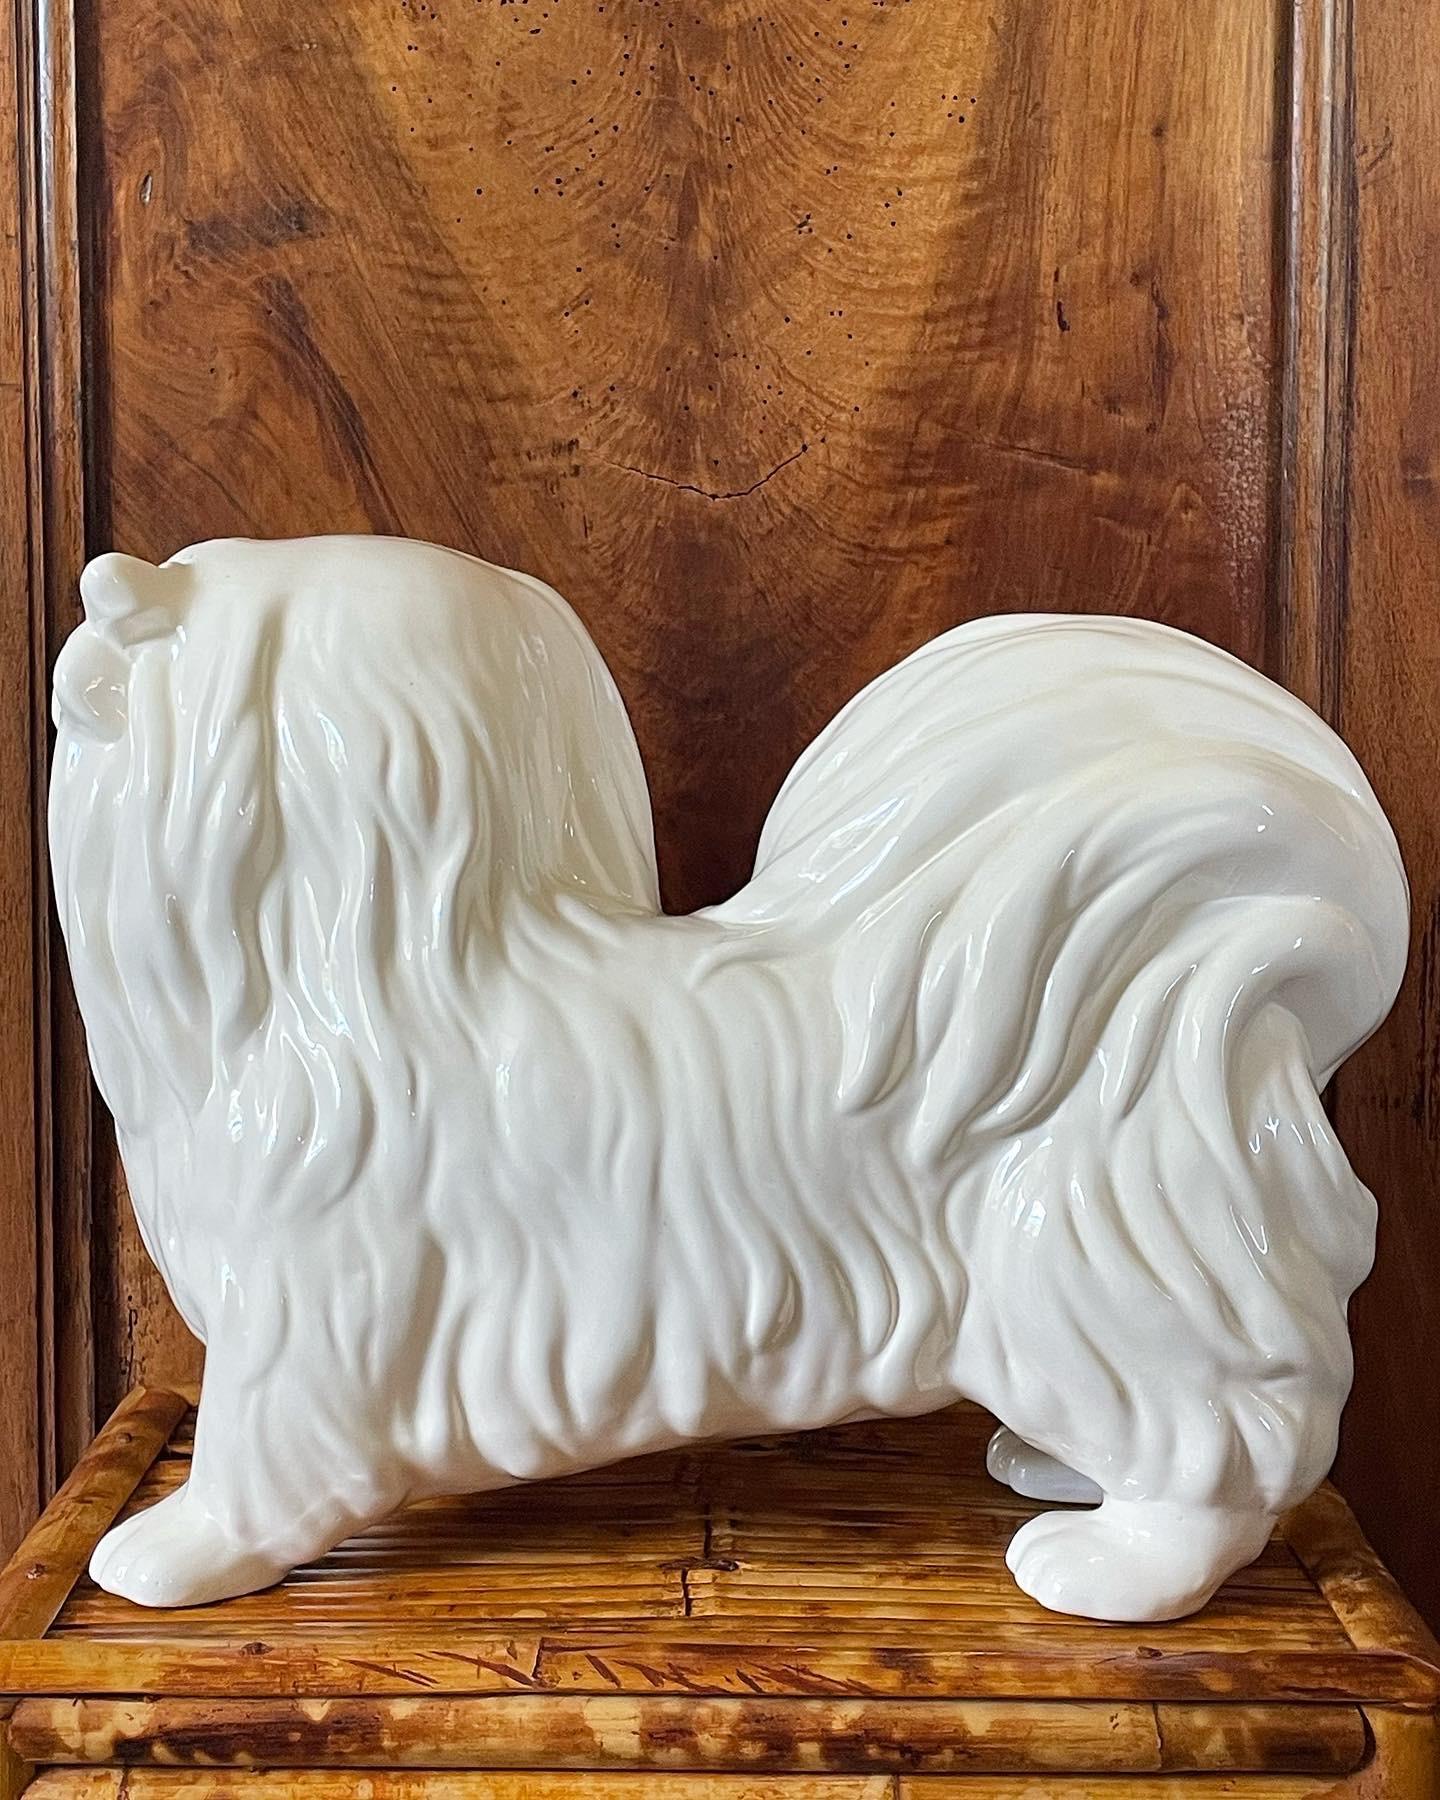 Mid Century Ceramic White Pekingese Dog